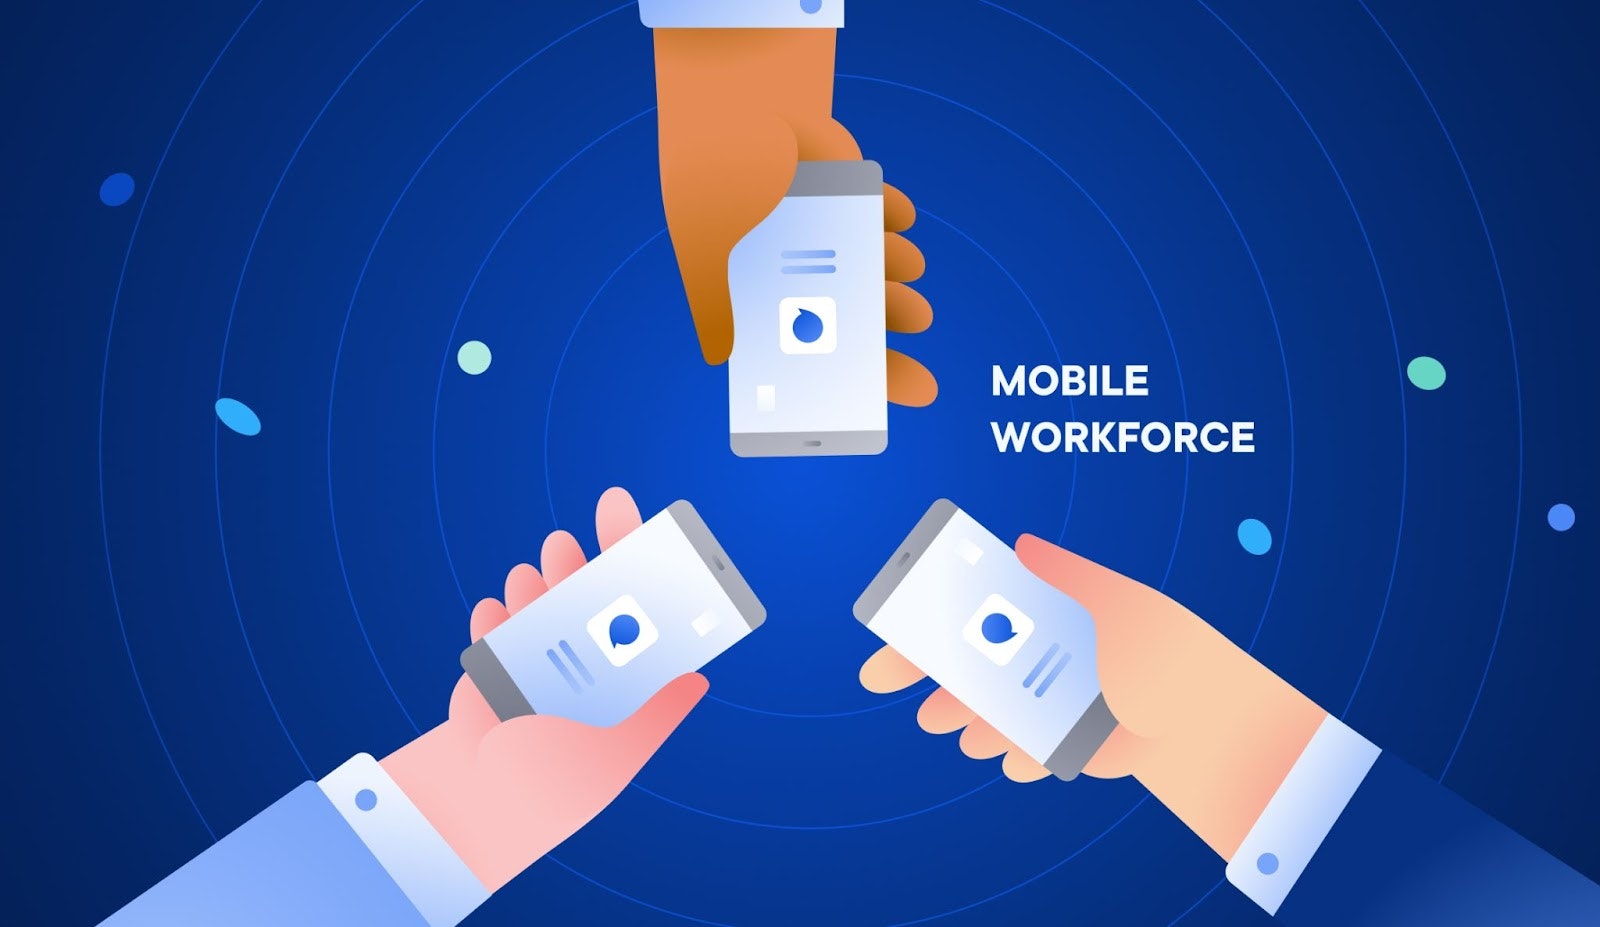 Mobile workforce management